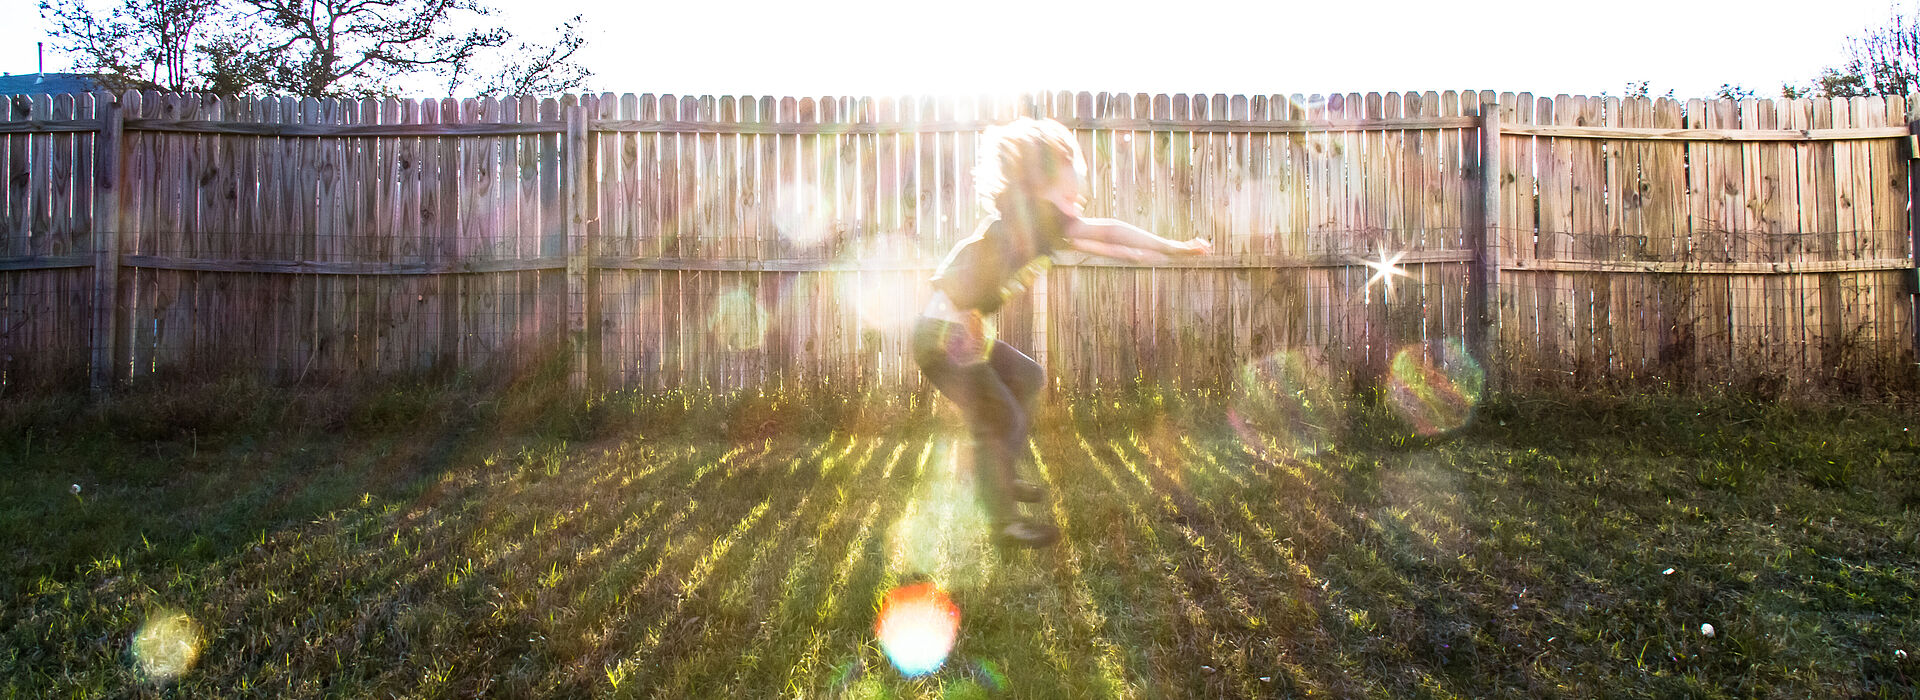 Kind vor einem Gartenzaun, spielt als würde es reiten. Gegenlicht.